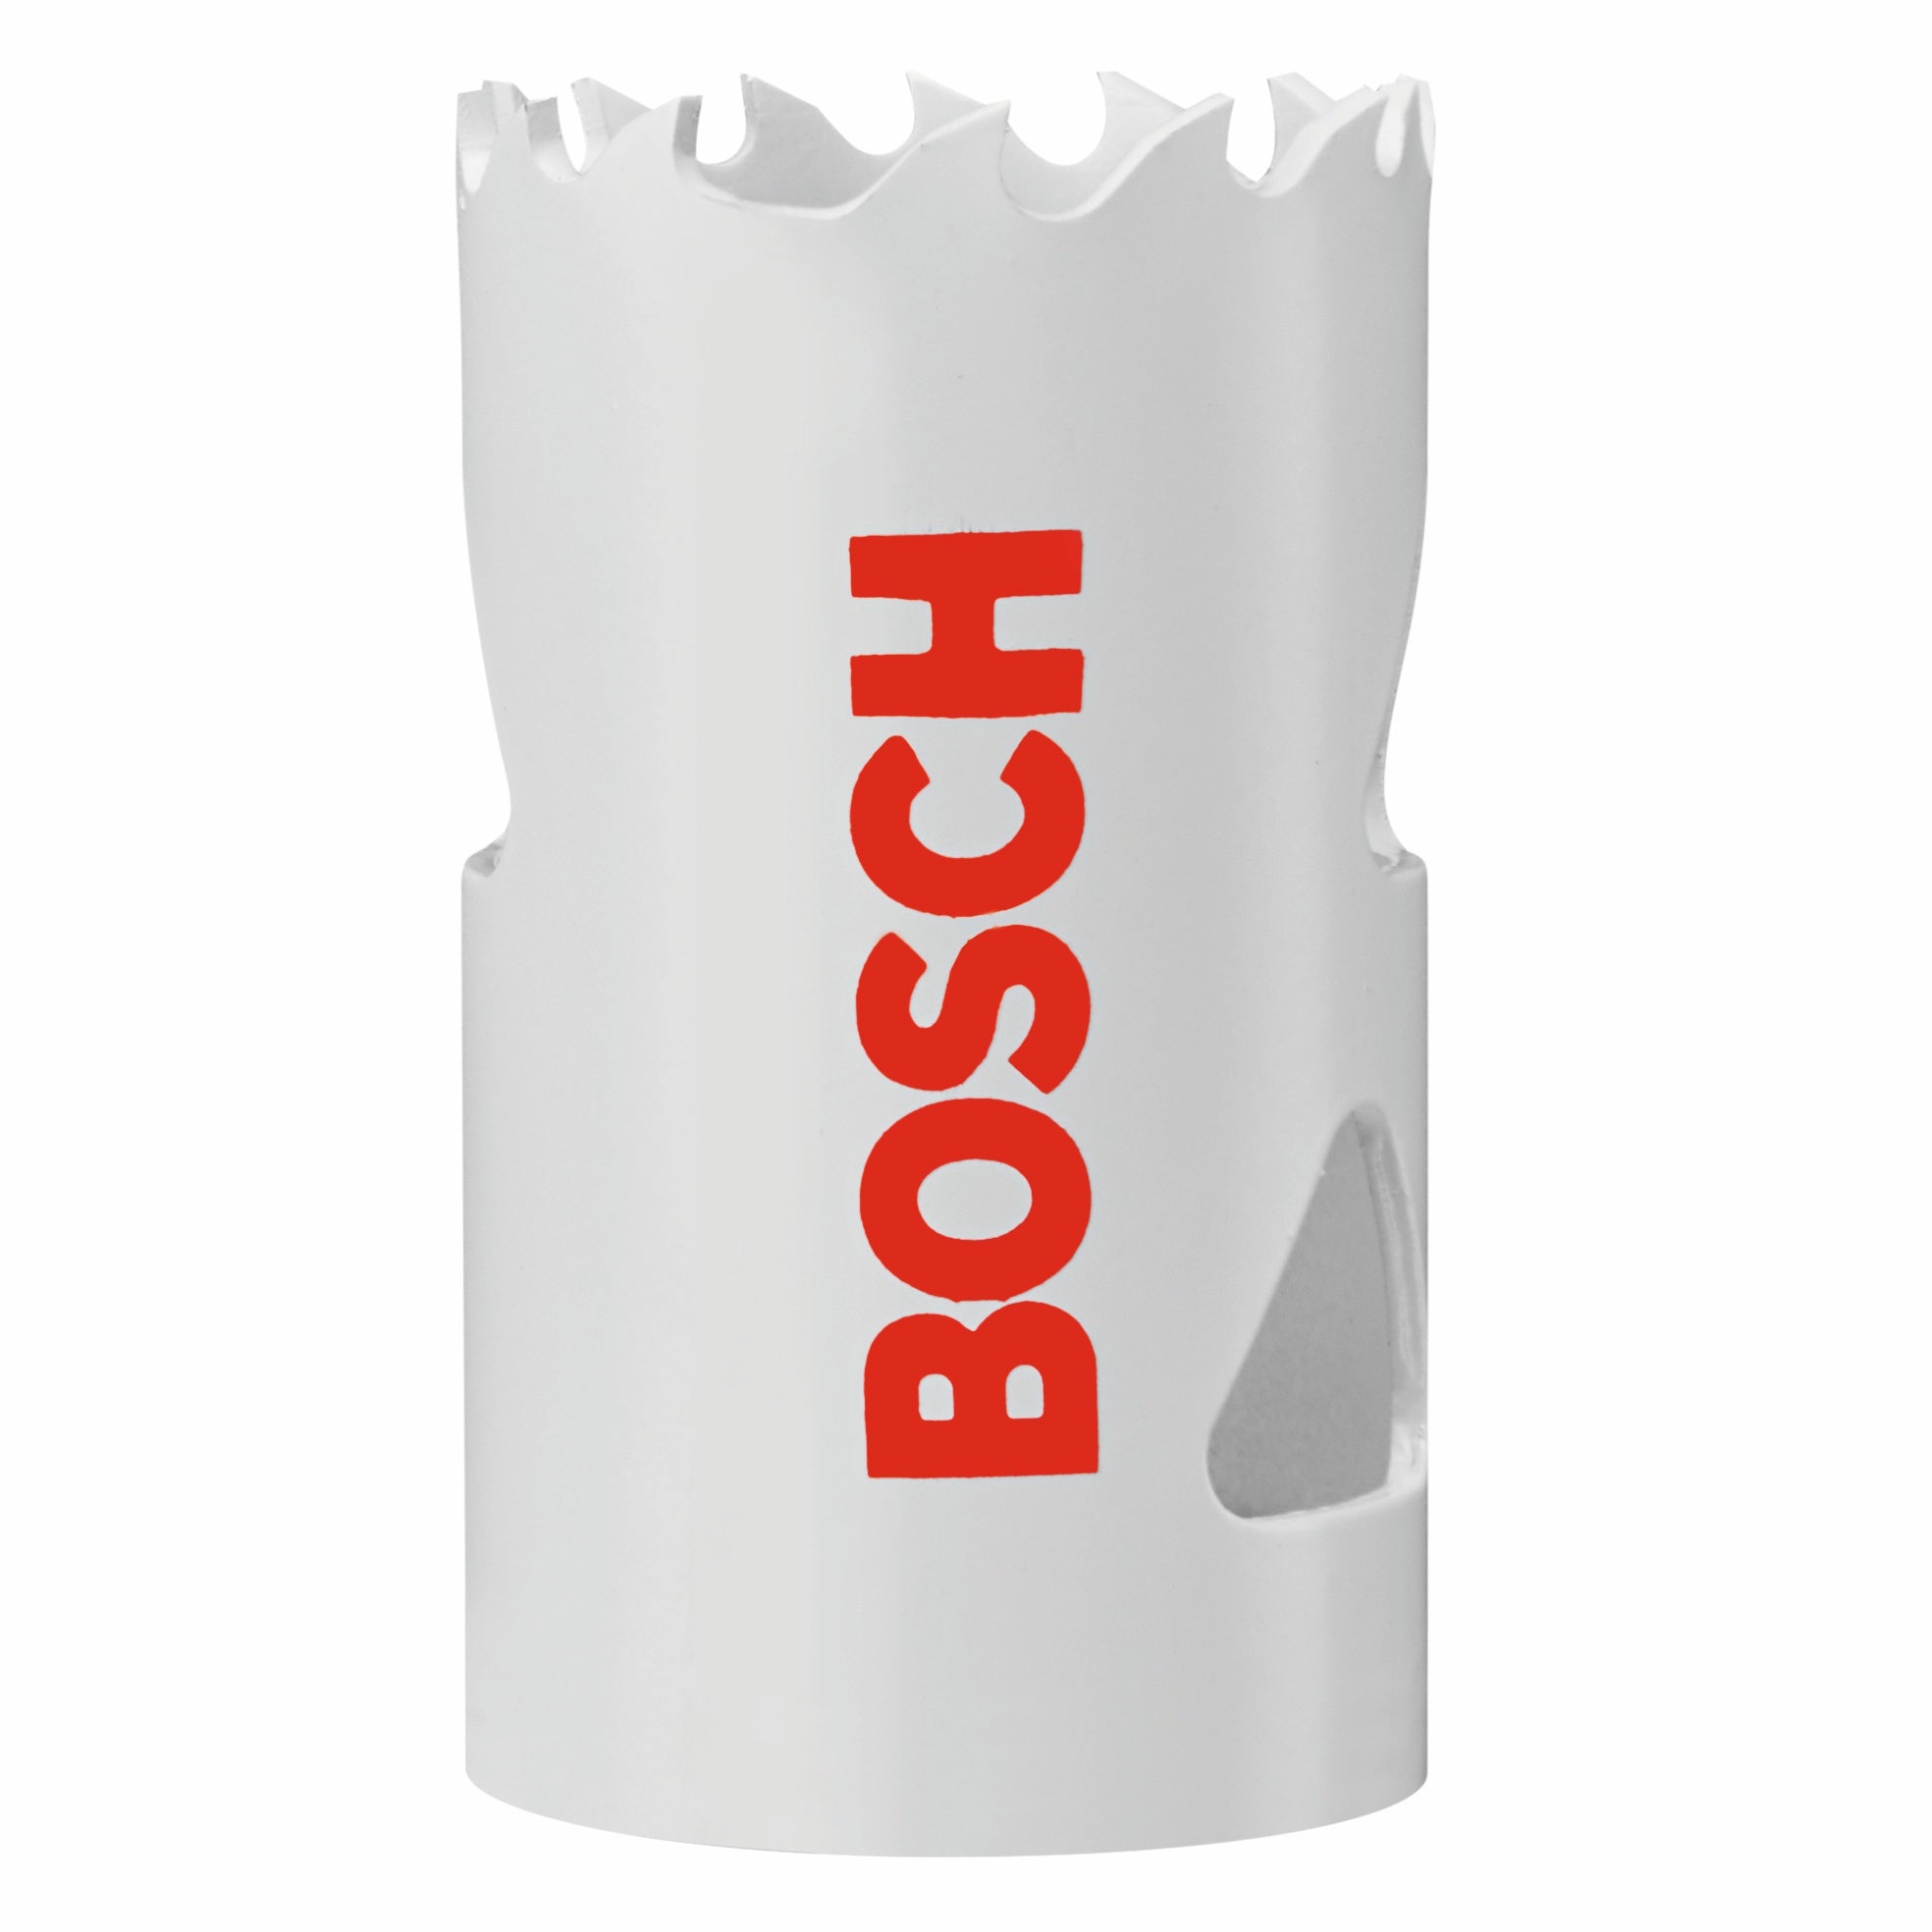 Bosch, BOSCH 1-1/8" Bi-Metal M42 Hole Saw